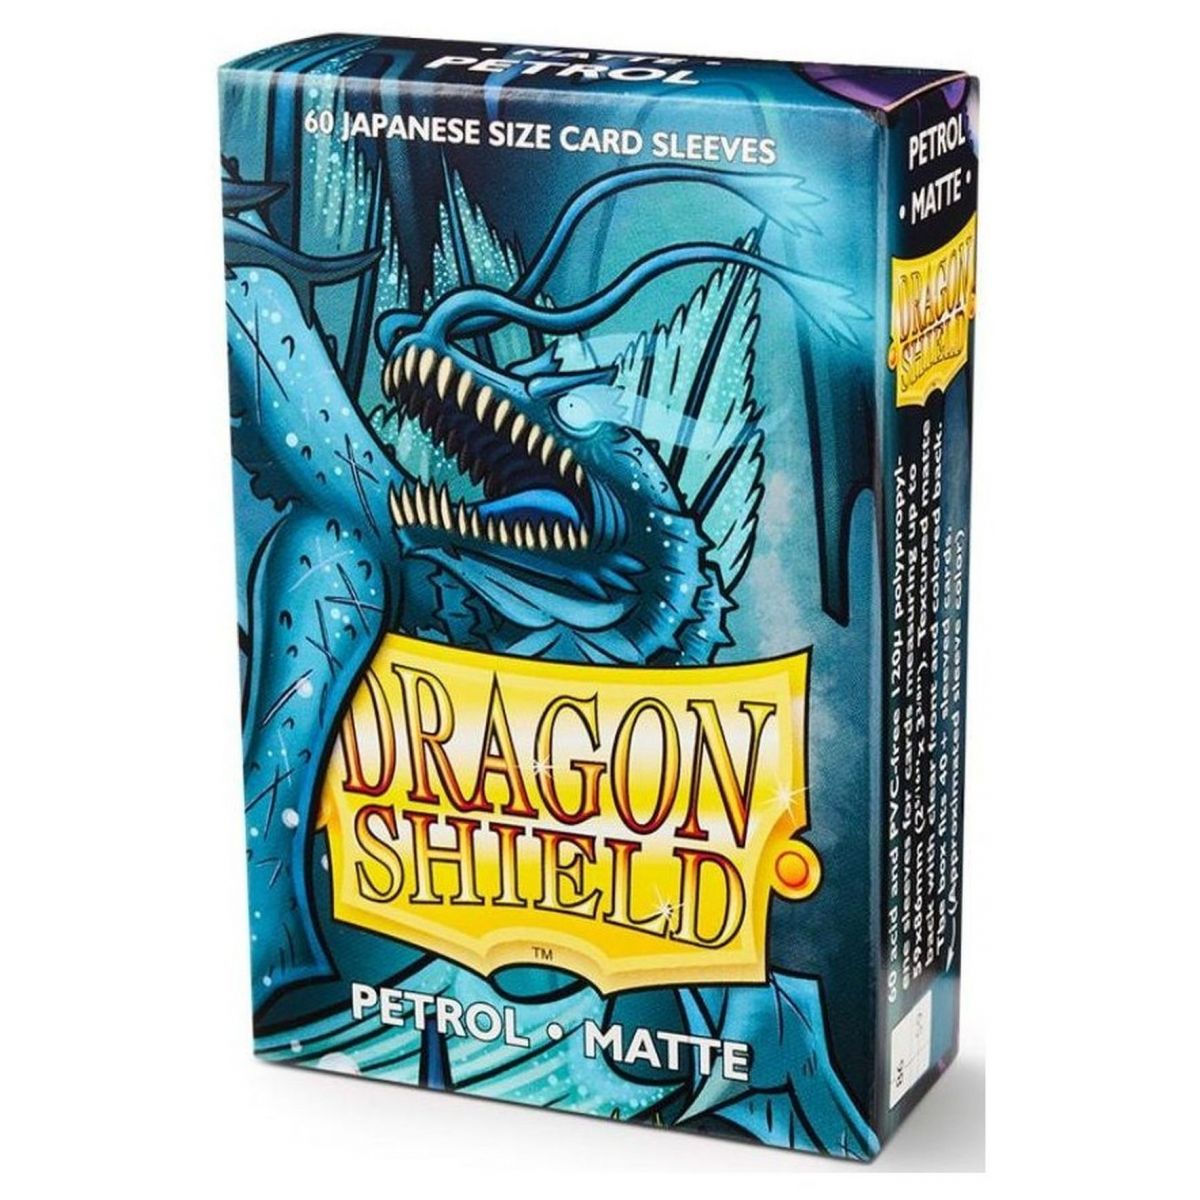 Dragon Shield Small Sleeves - Matte Petrol (60)